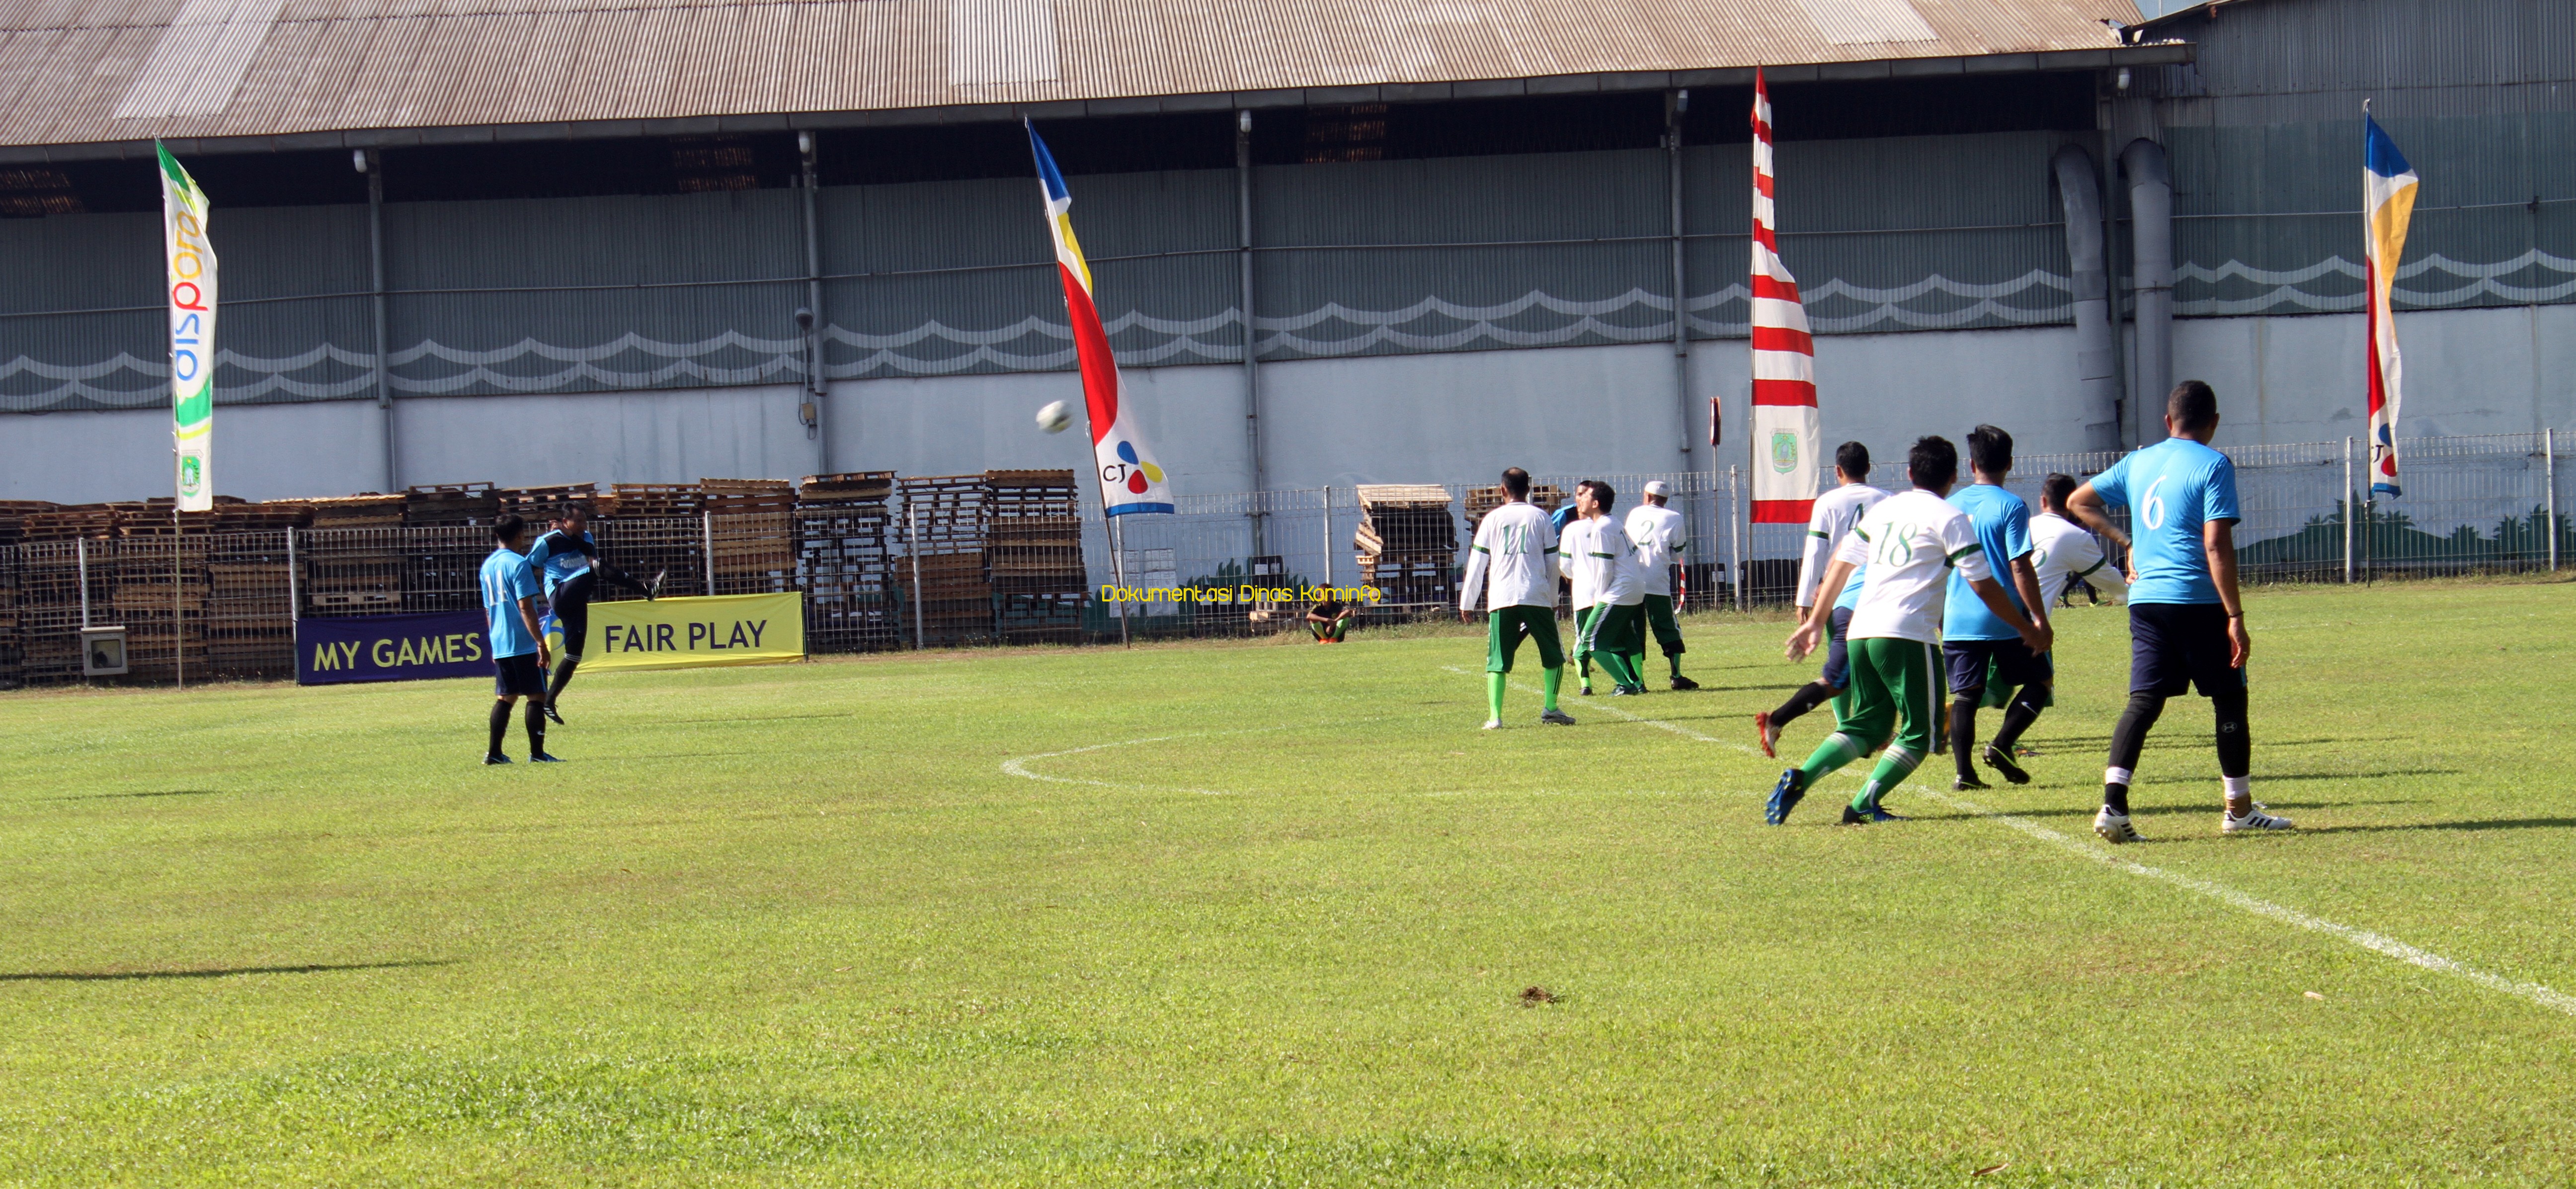 Pertandingan Sepak Bola Ulama Vs Umaro', Bupati Irsyad Ciptakan 3 Gol 